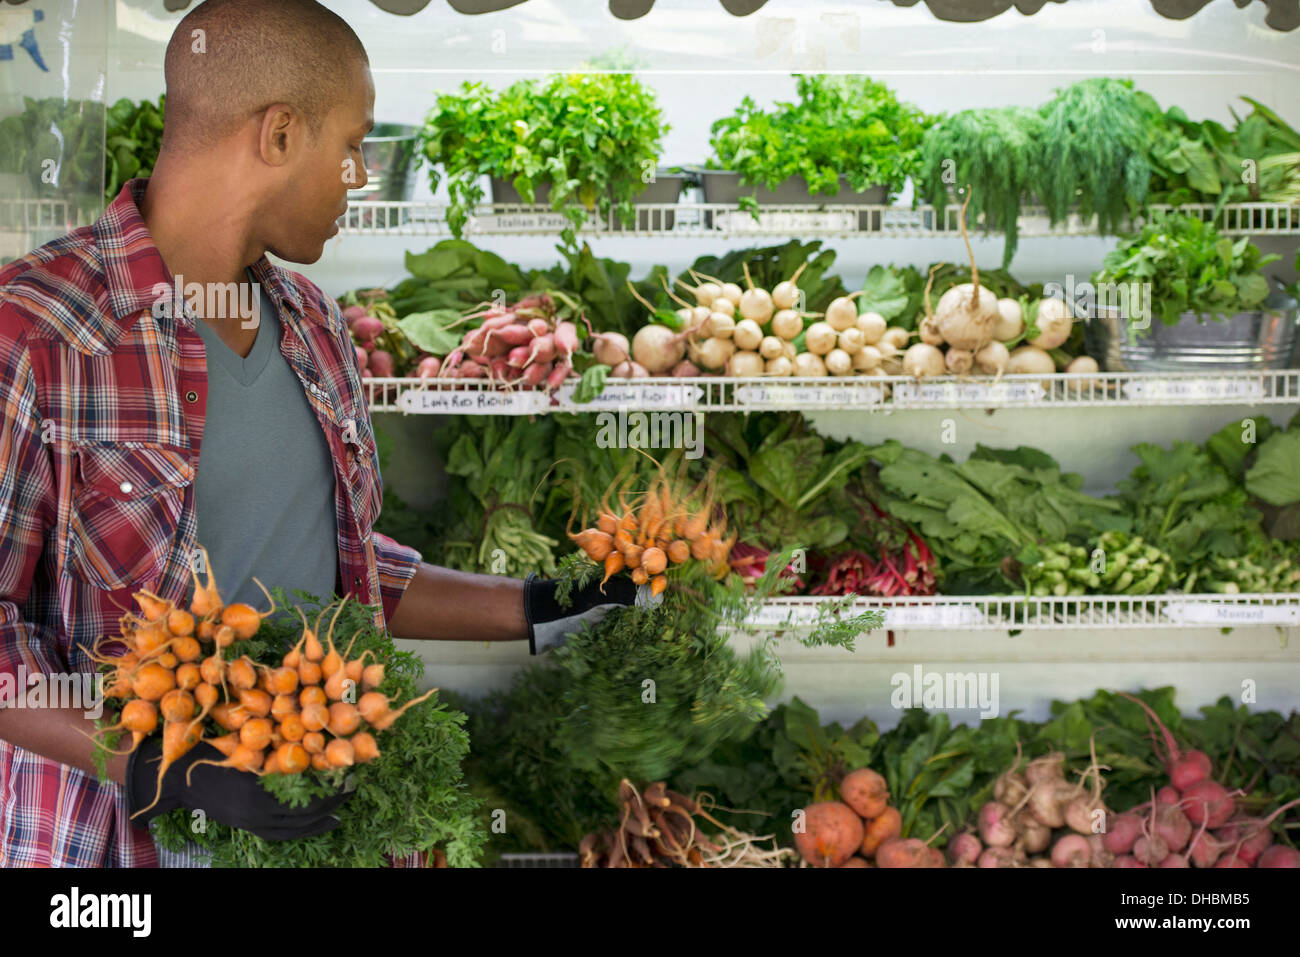 Eine Farm mit Reihen von frisch geerntetem Gemüse zum Verkauf stehen. Ein Mann hält Bund Karotten. Stockfoto